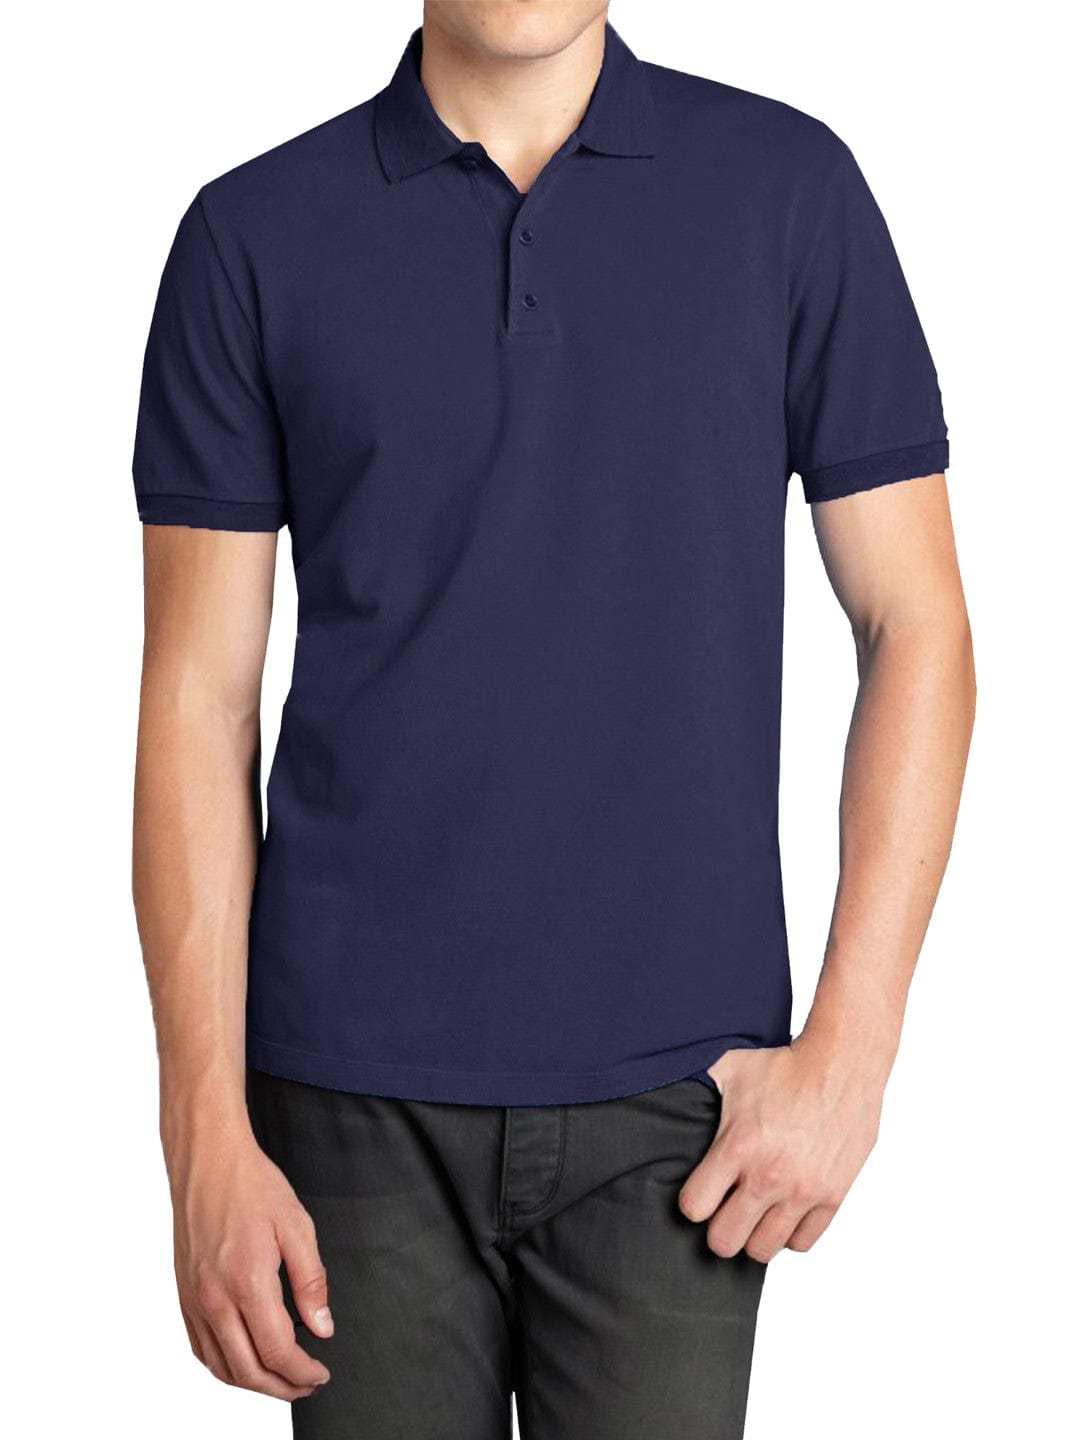 Men's Short Sleeve Polyester Pique Polo Shirt